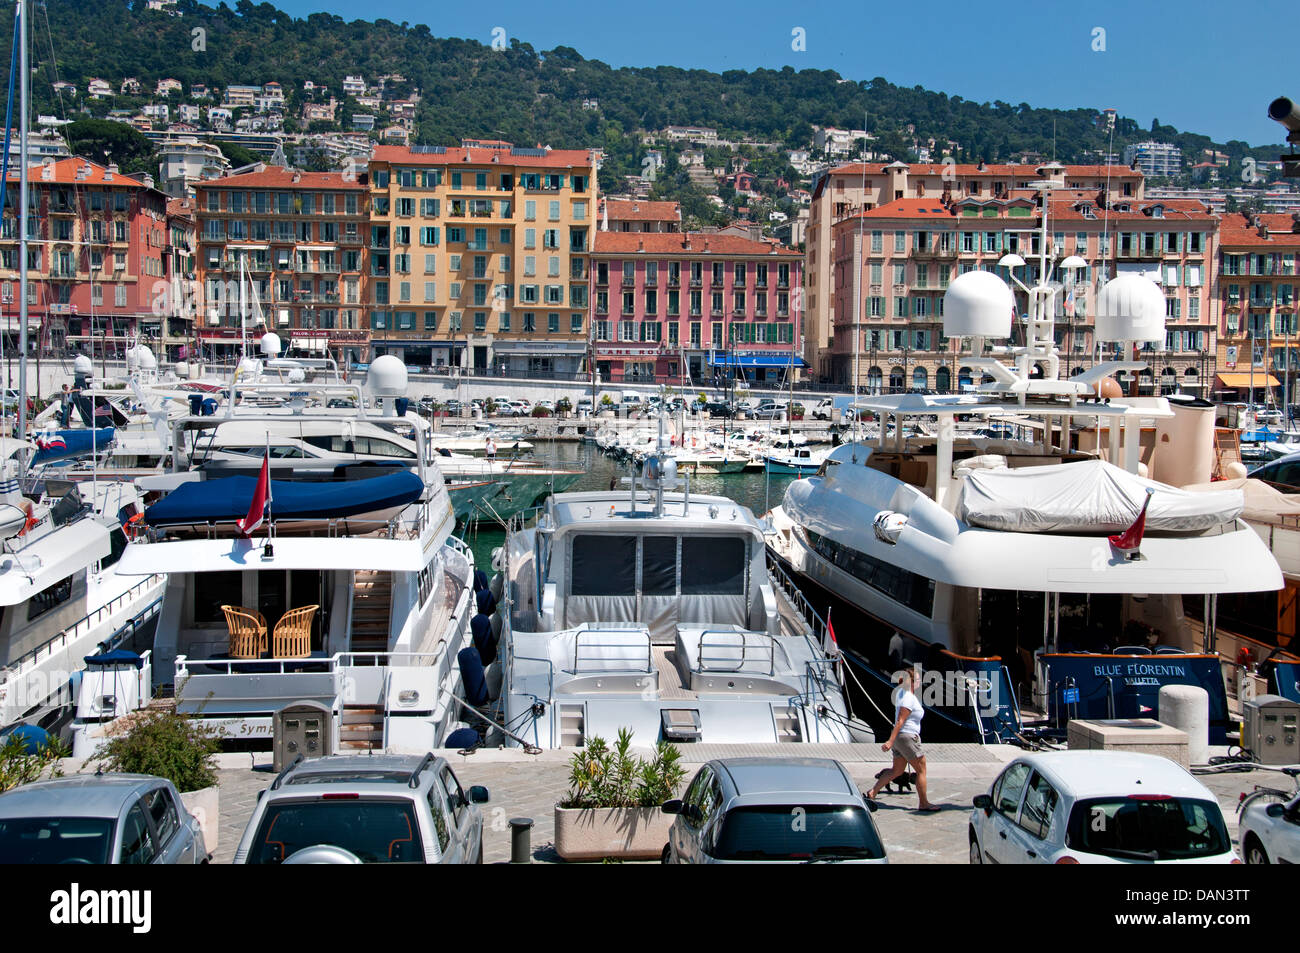 Schönen alten Vieux Port Hafen Côte d ' Azur Cote d ' Azur mediterran Stockfoto